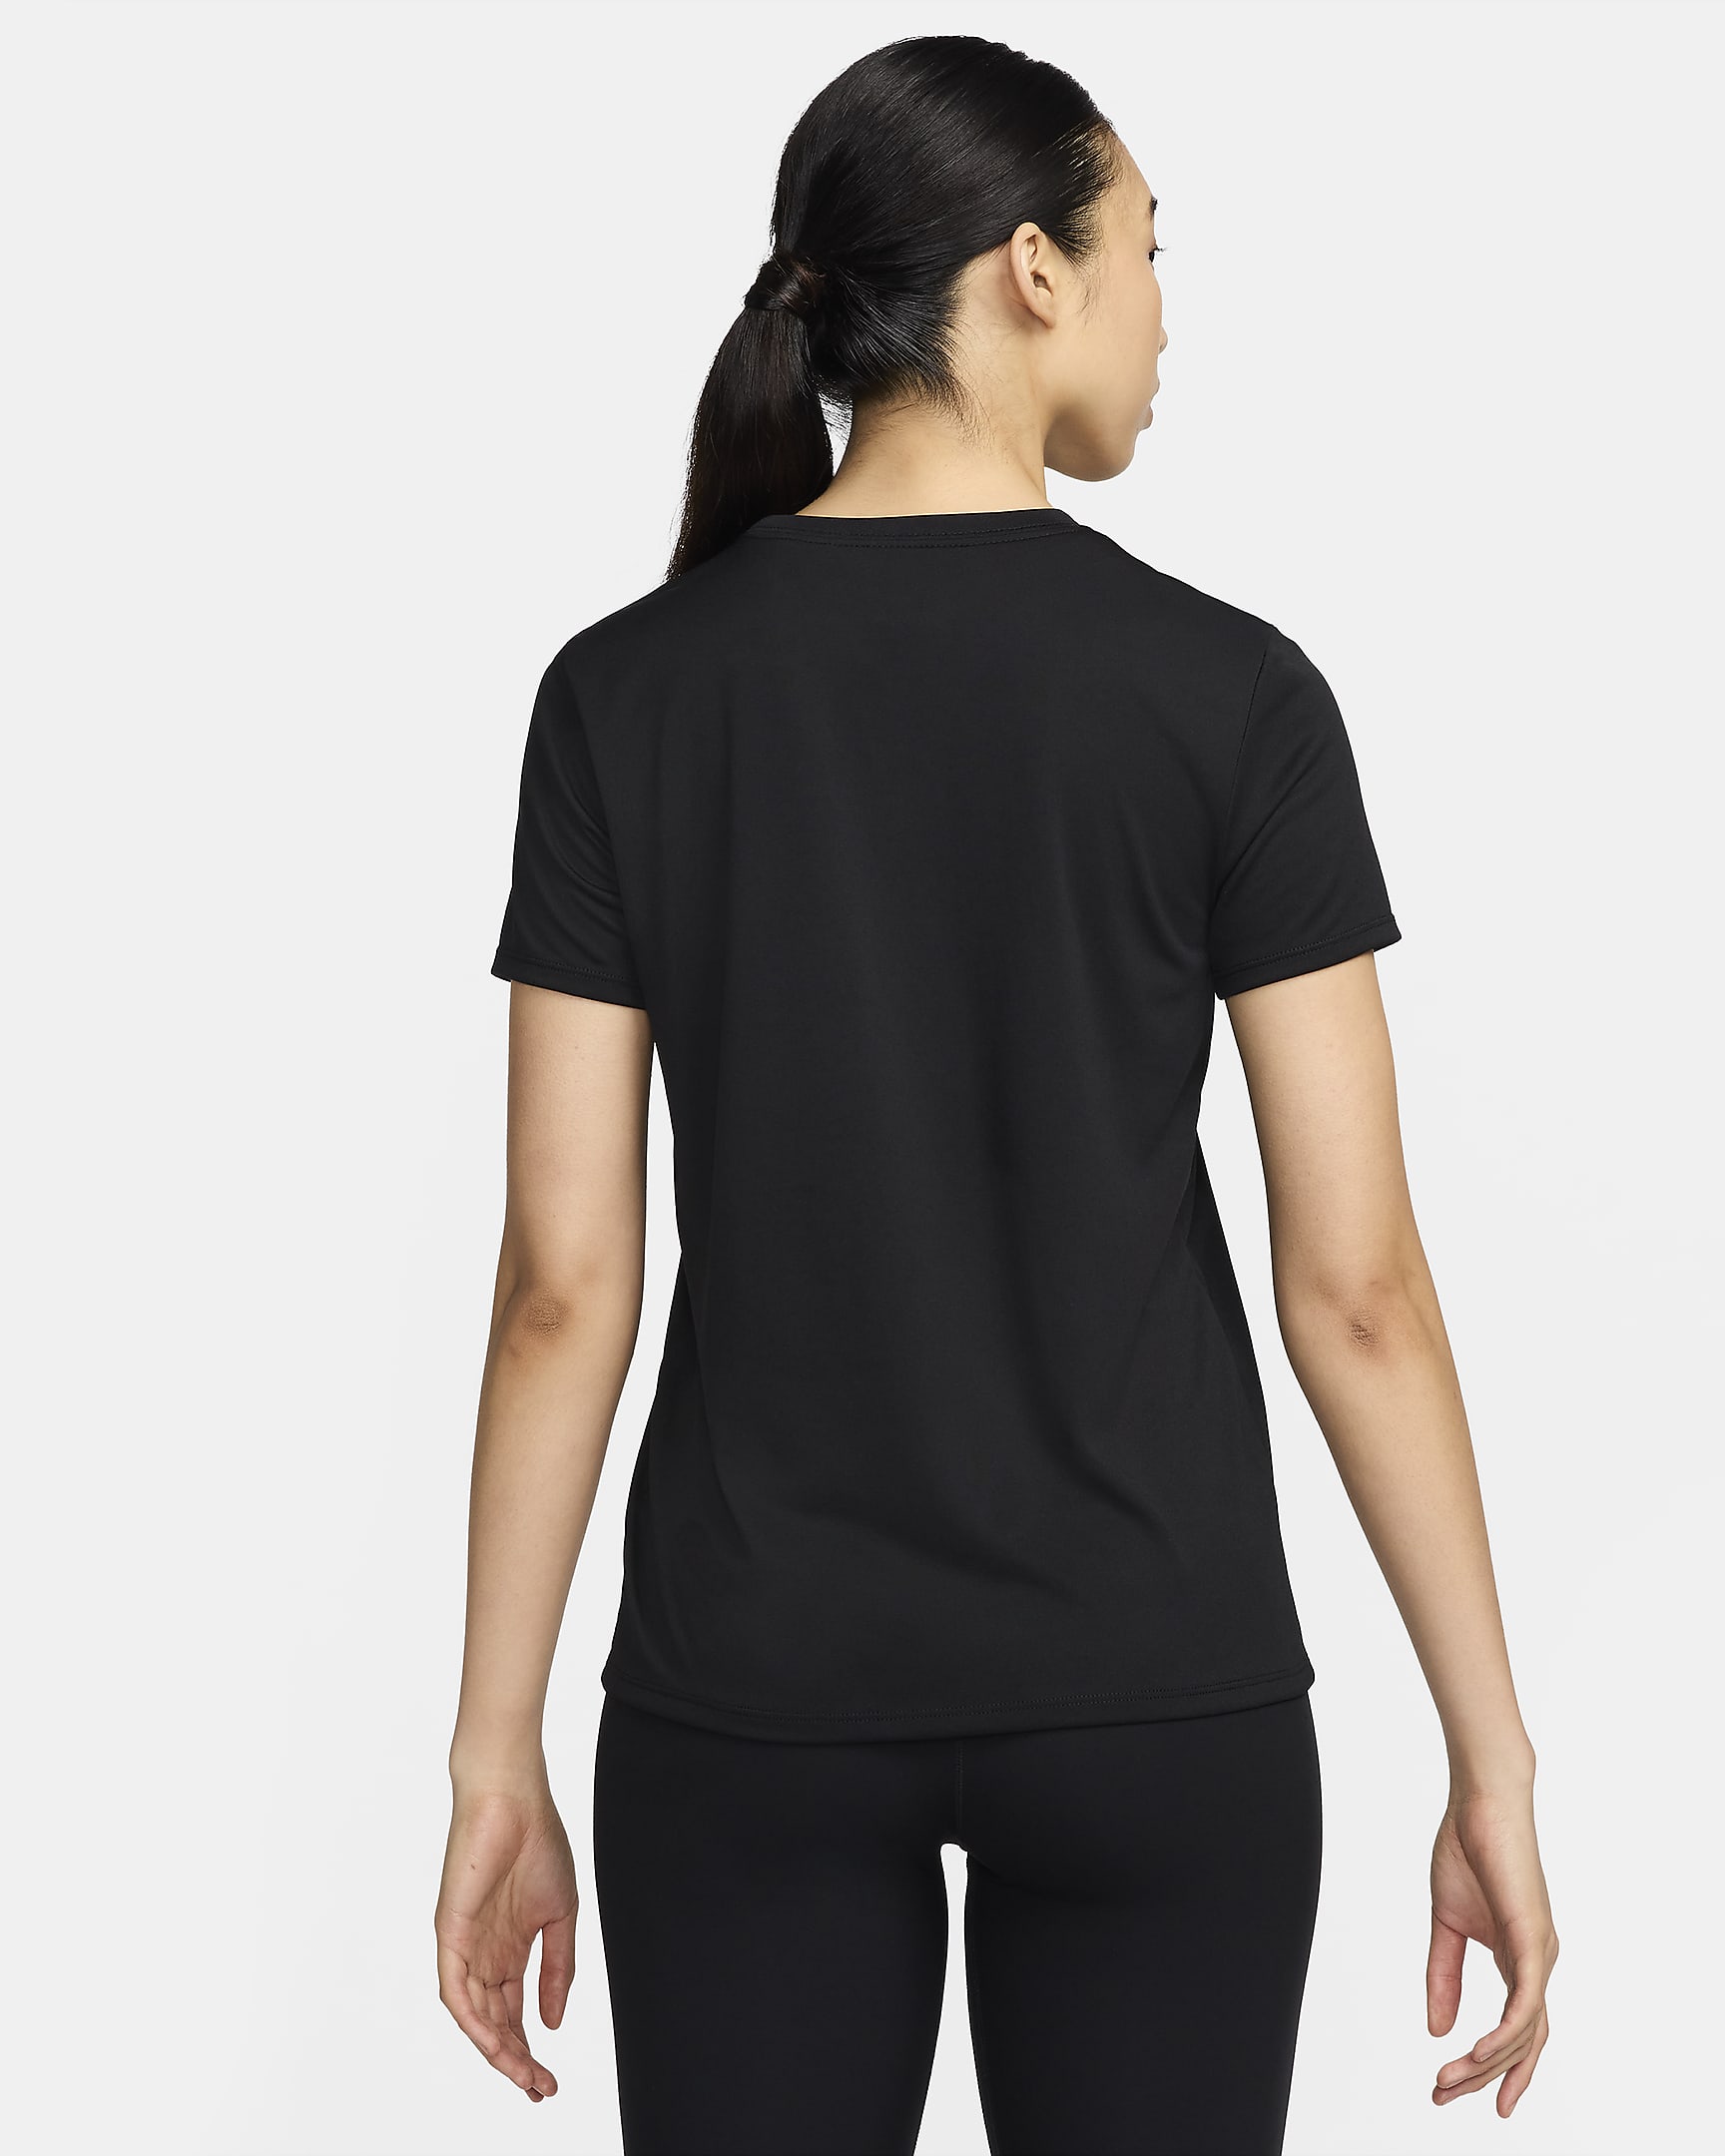 Nike Dri-FIT Women's T-Shirt. Nike IN